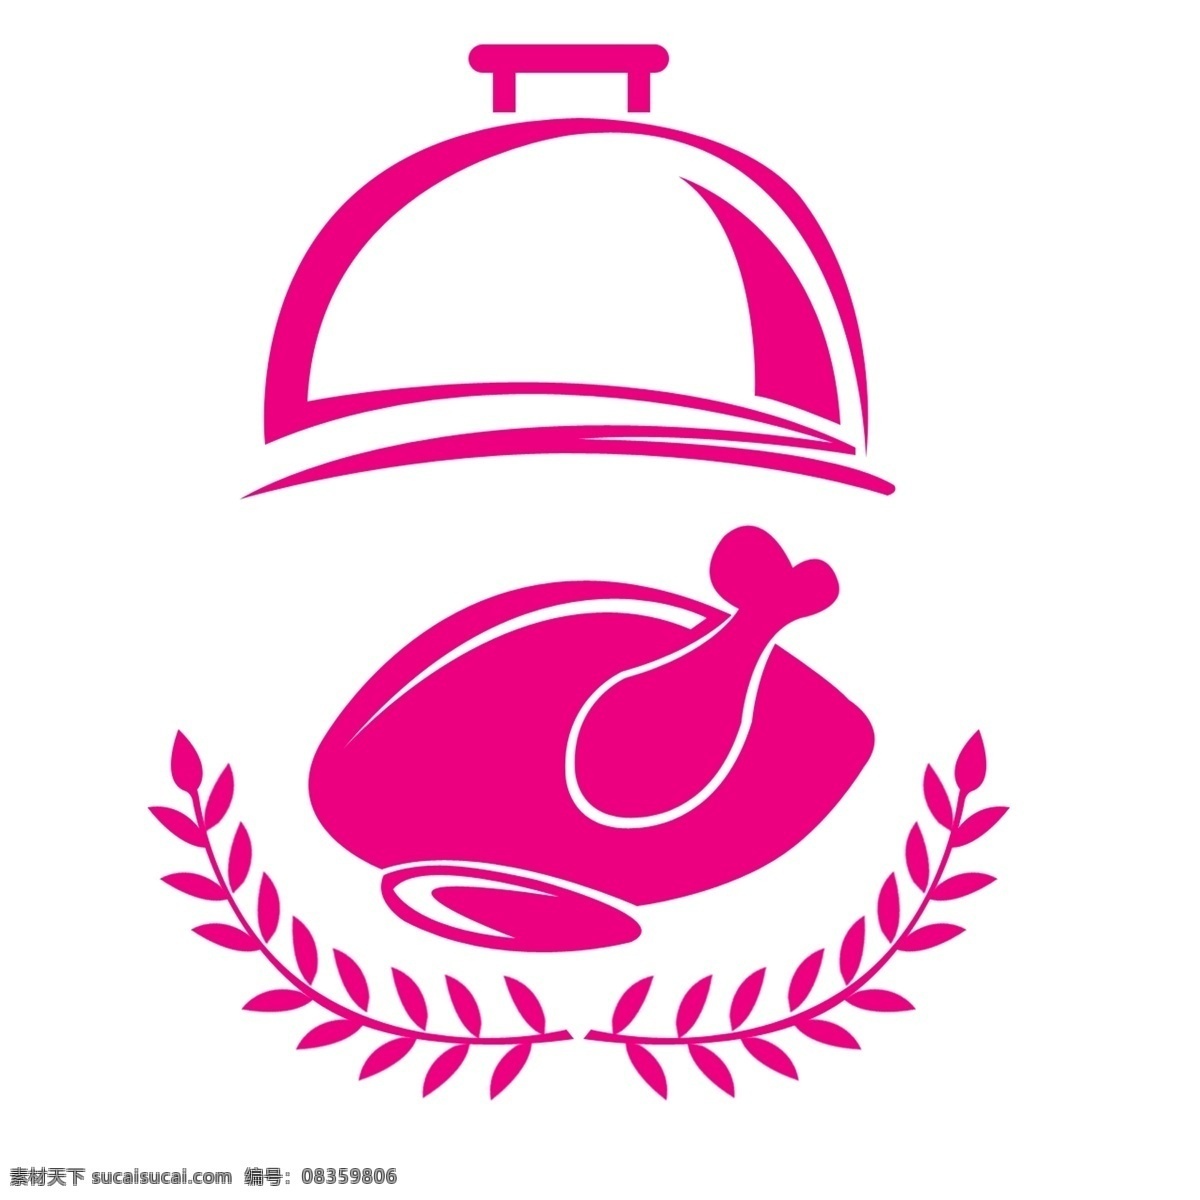 创意 烤火 鸡 卡通 插画 烤鸡 出炉的烤鸡 火鸡 圣诞节食物 卡通美食 创意美食插画 粉色锅盖 卡通烤鸡